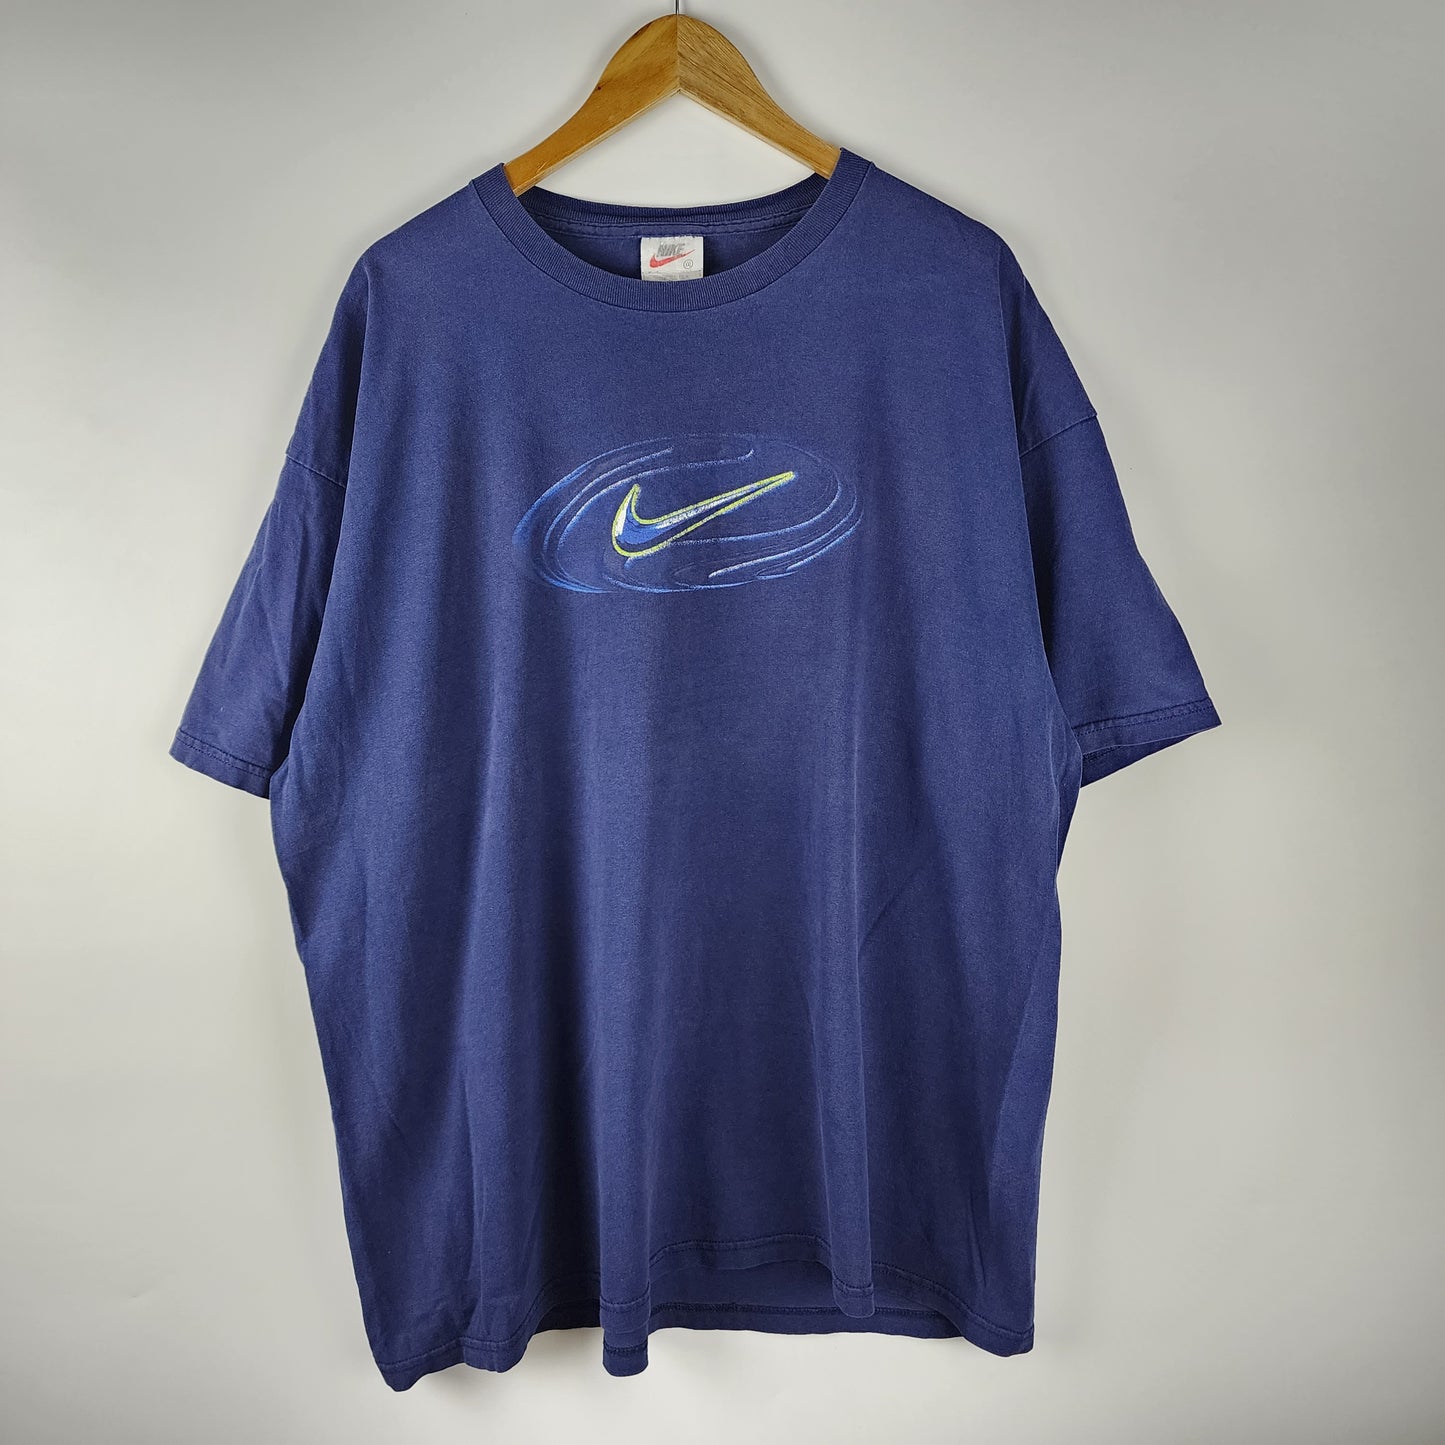 Vintage Nike Circle Swoosh 90's made in USA T-shirt 